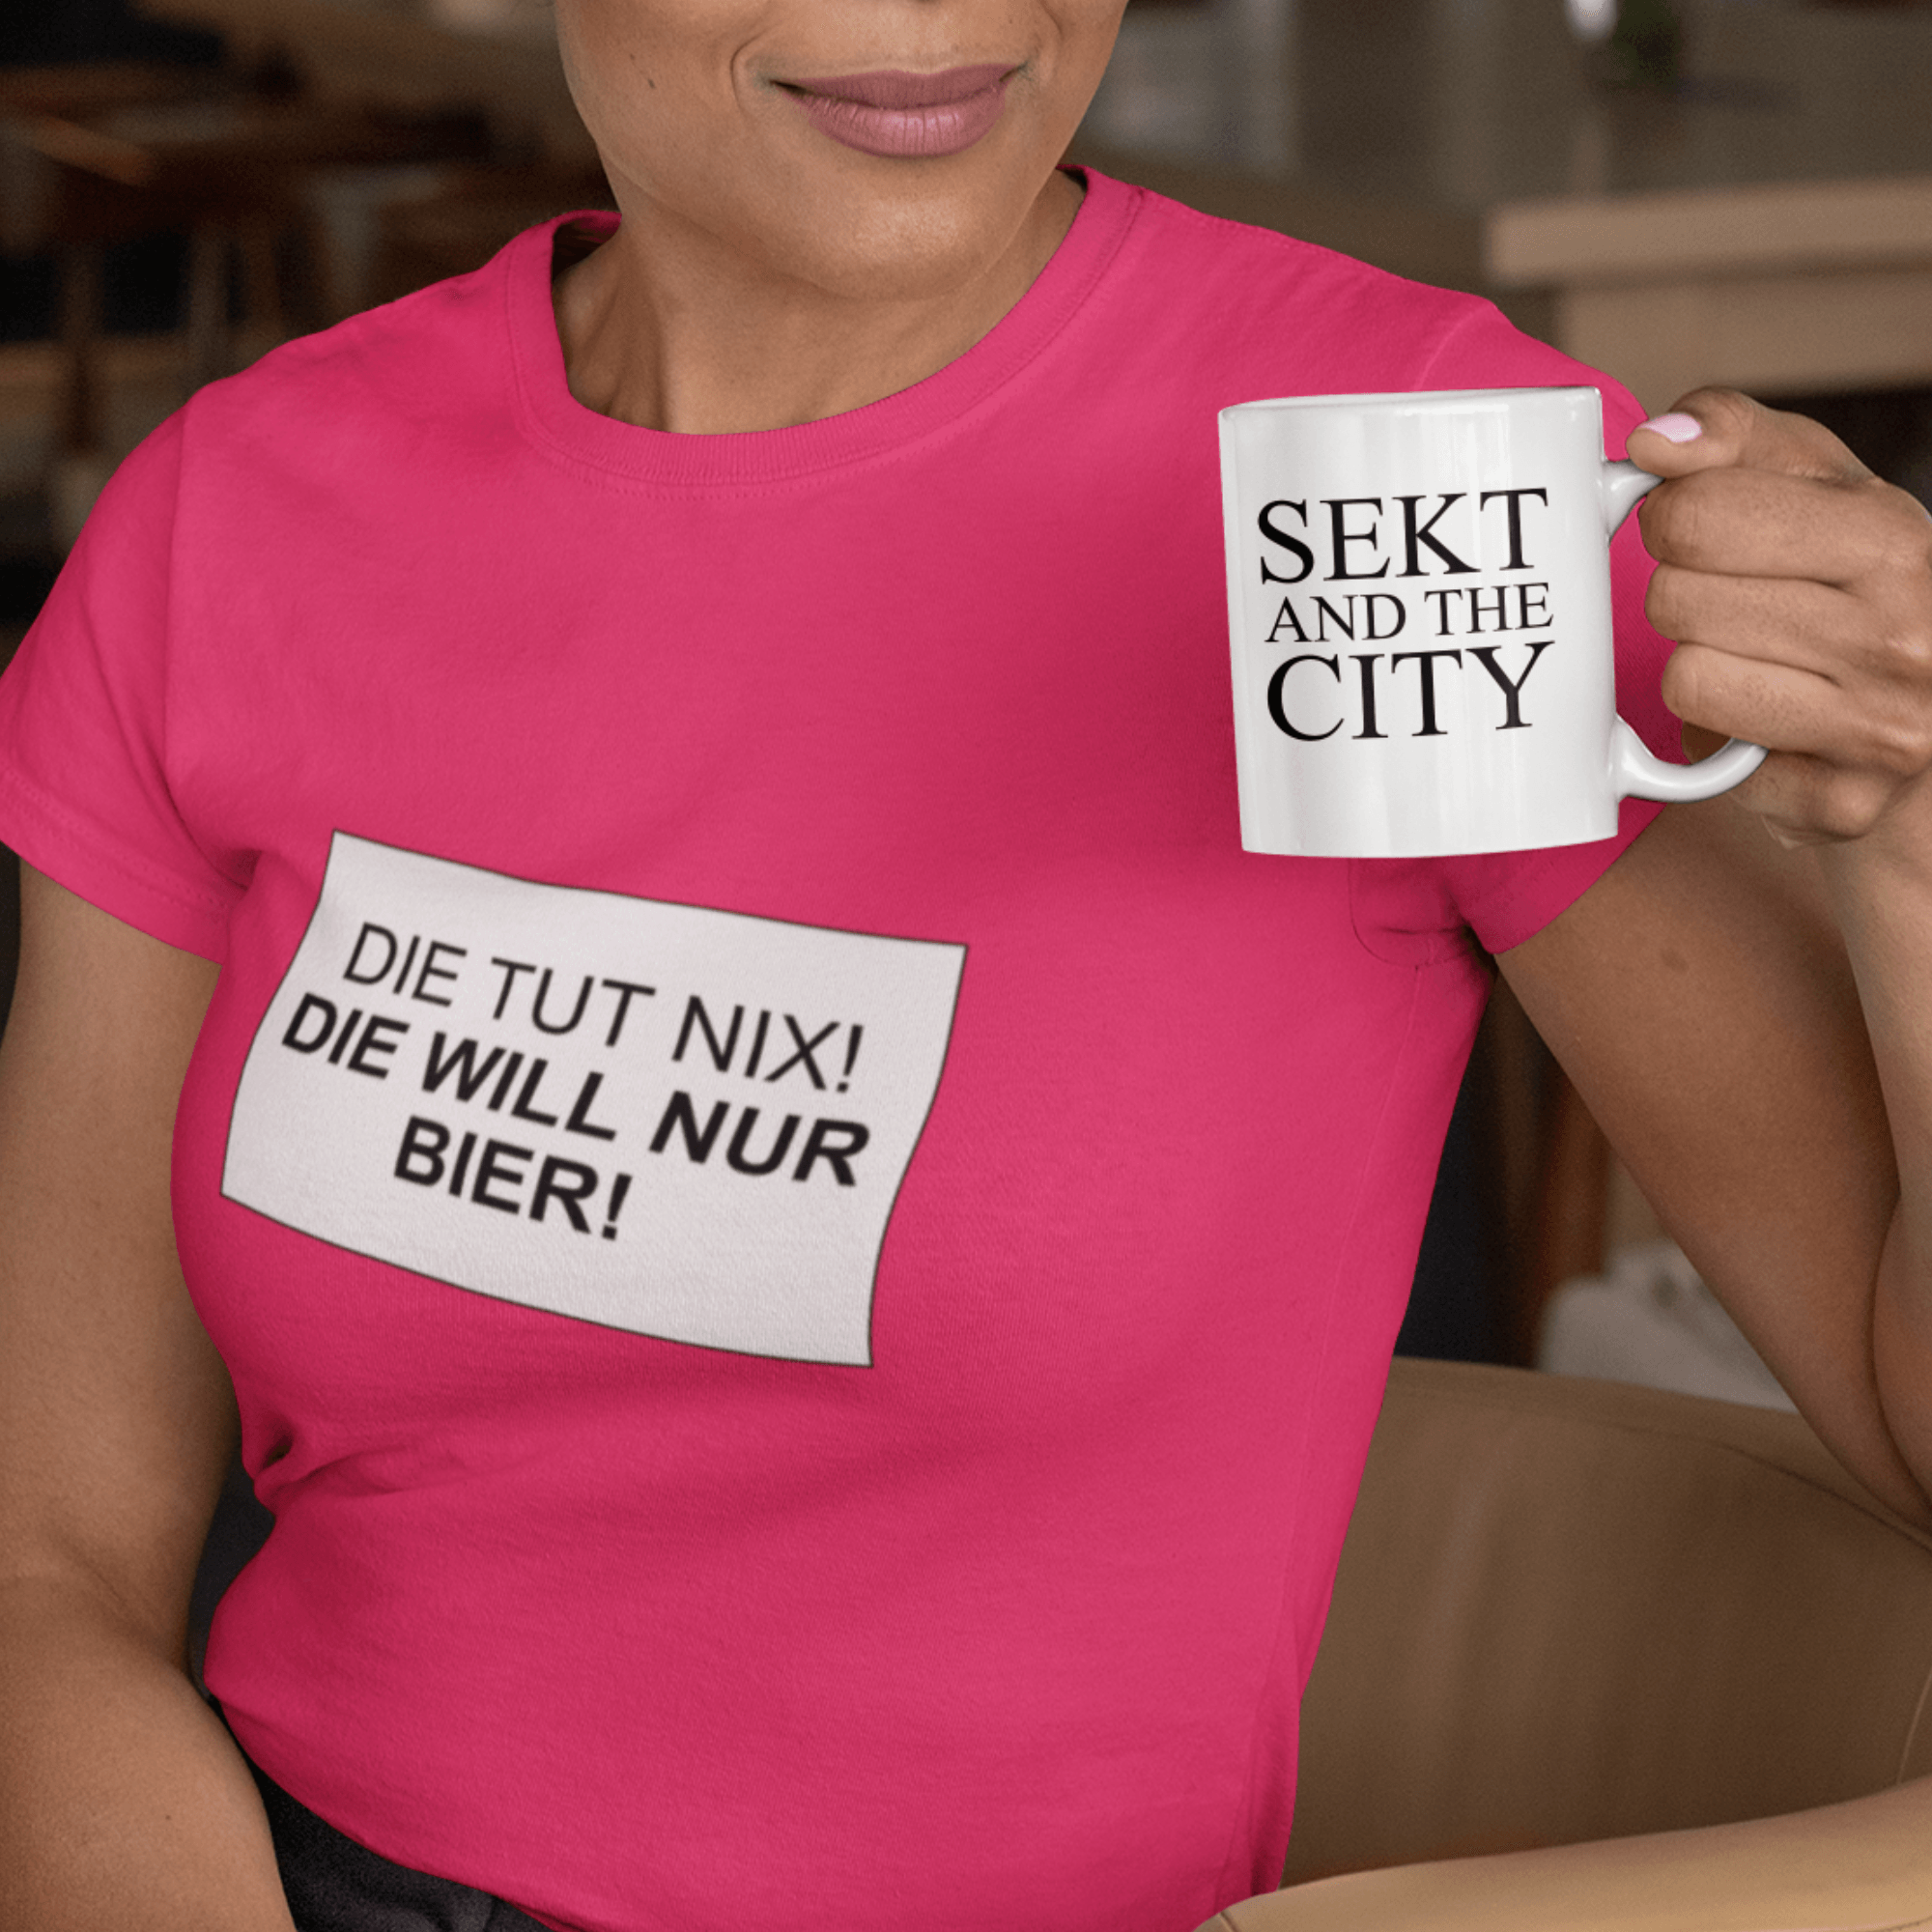 DIE TUT NIX! BIER - Damen Premium Organic Shirt - einschenken24.de